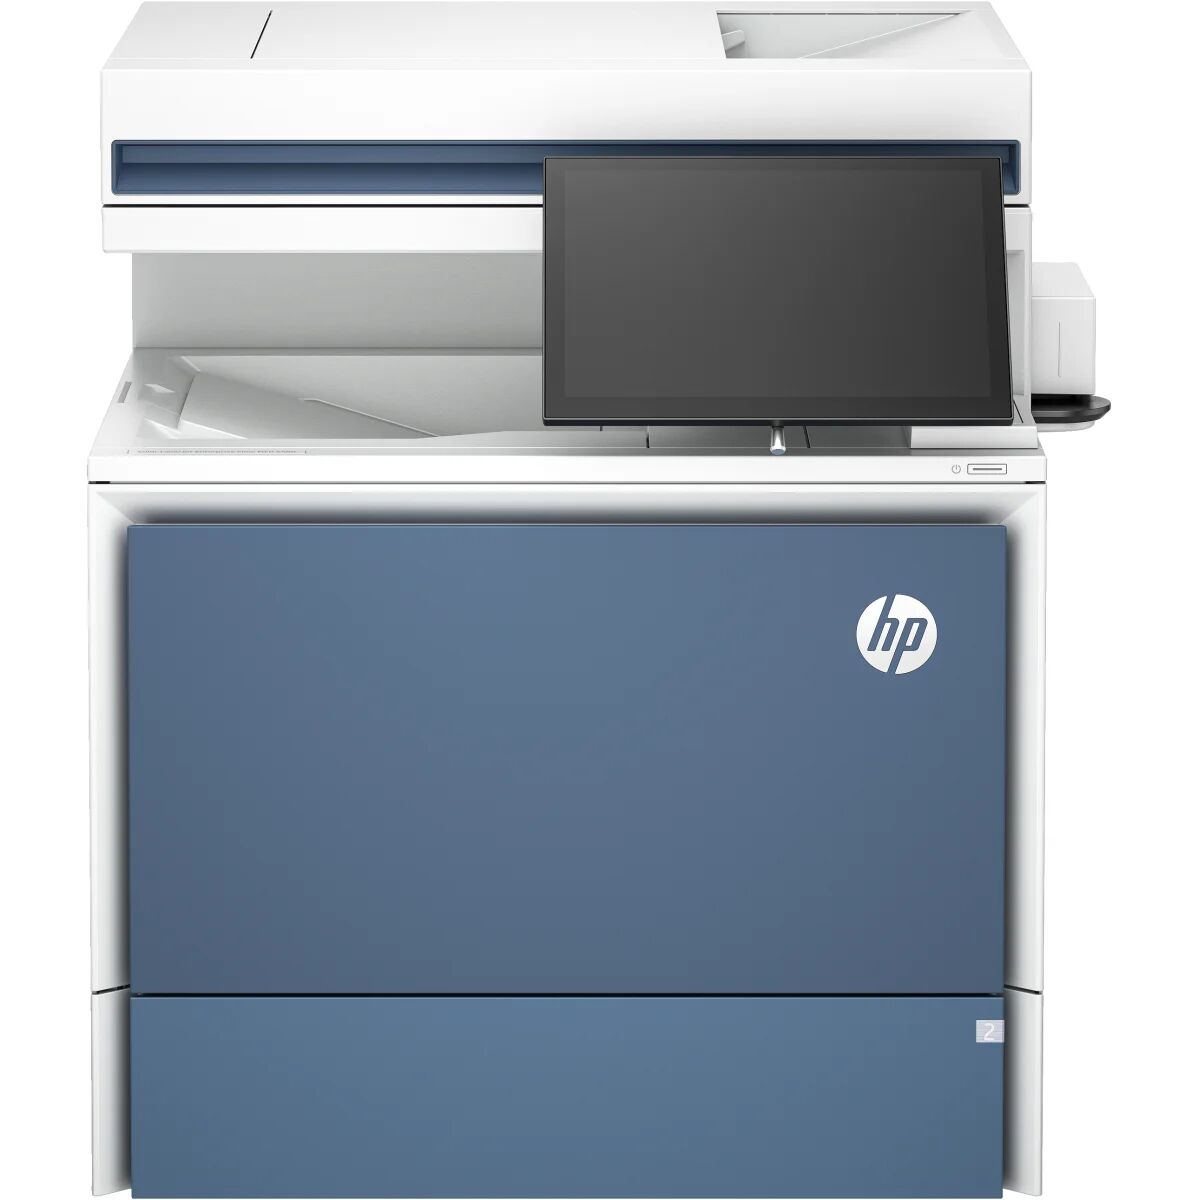 HP Color LaserJet Enterprise Flow Stampante multifunzione 5800zf, Stampa, copia, scansione, fax, Alimentatore automatico di documenti; vassoi ad alta capacità opzionali; touchscreen; cartuccia TerraJet [58R10A#B19]